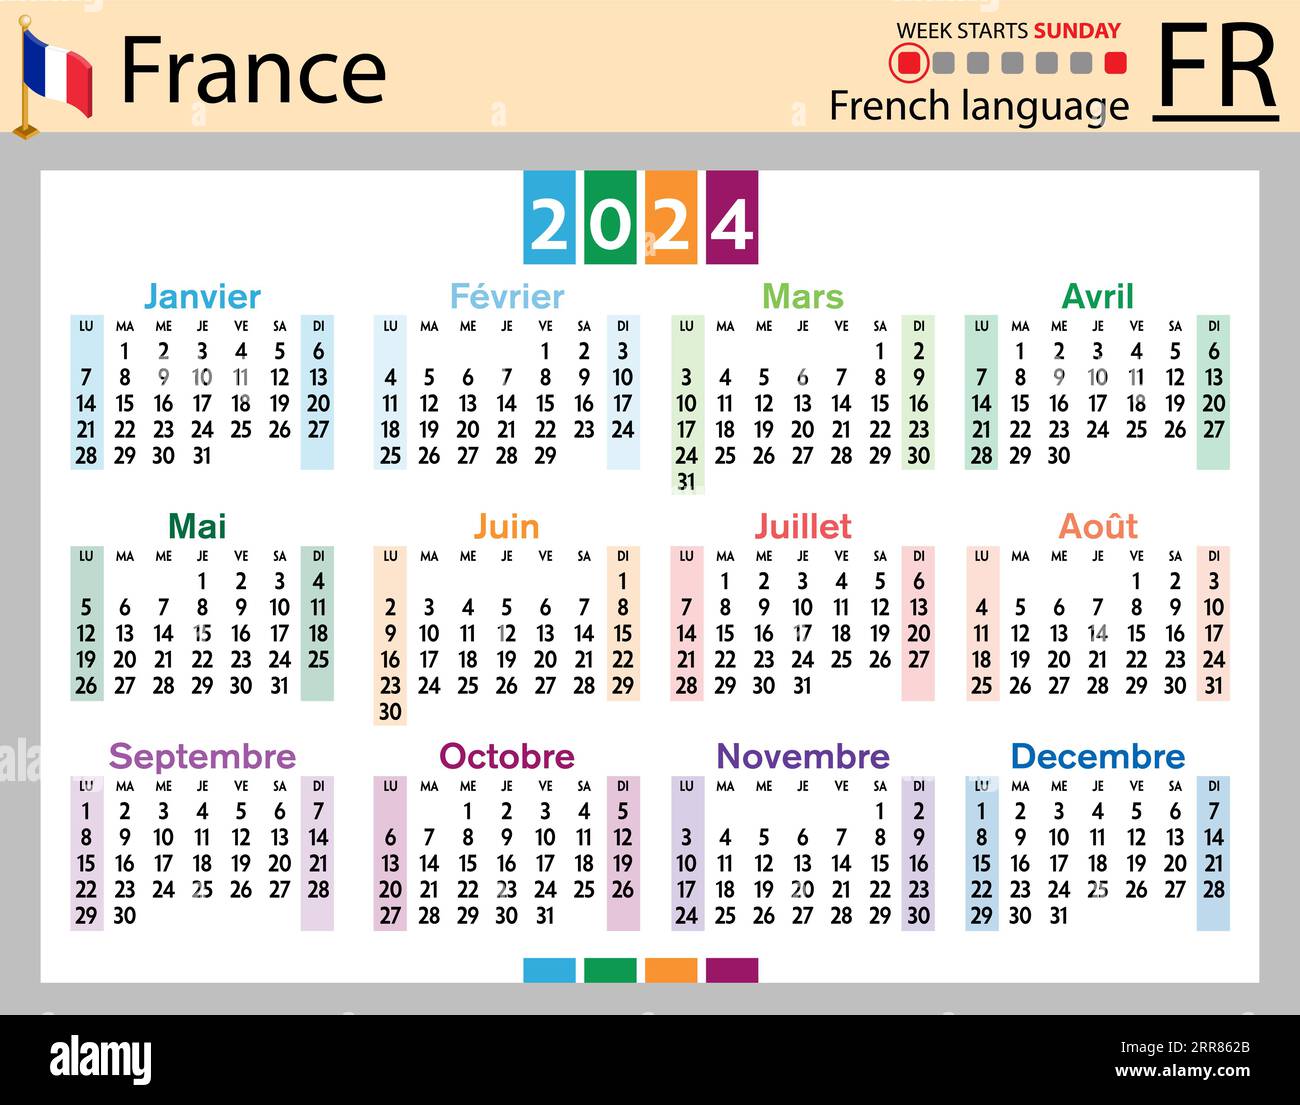 Vivre en Pleine Conscience, 2024 Square Wall Calendar, French Language